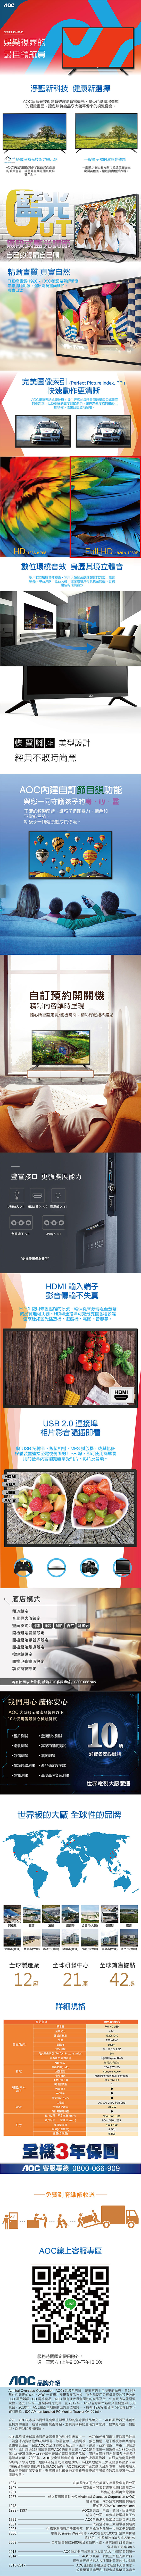 ★送HDMI線★美國AOC 40吋FHD LED液晶顯示器+視訊盒40M3080